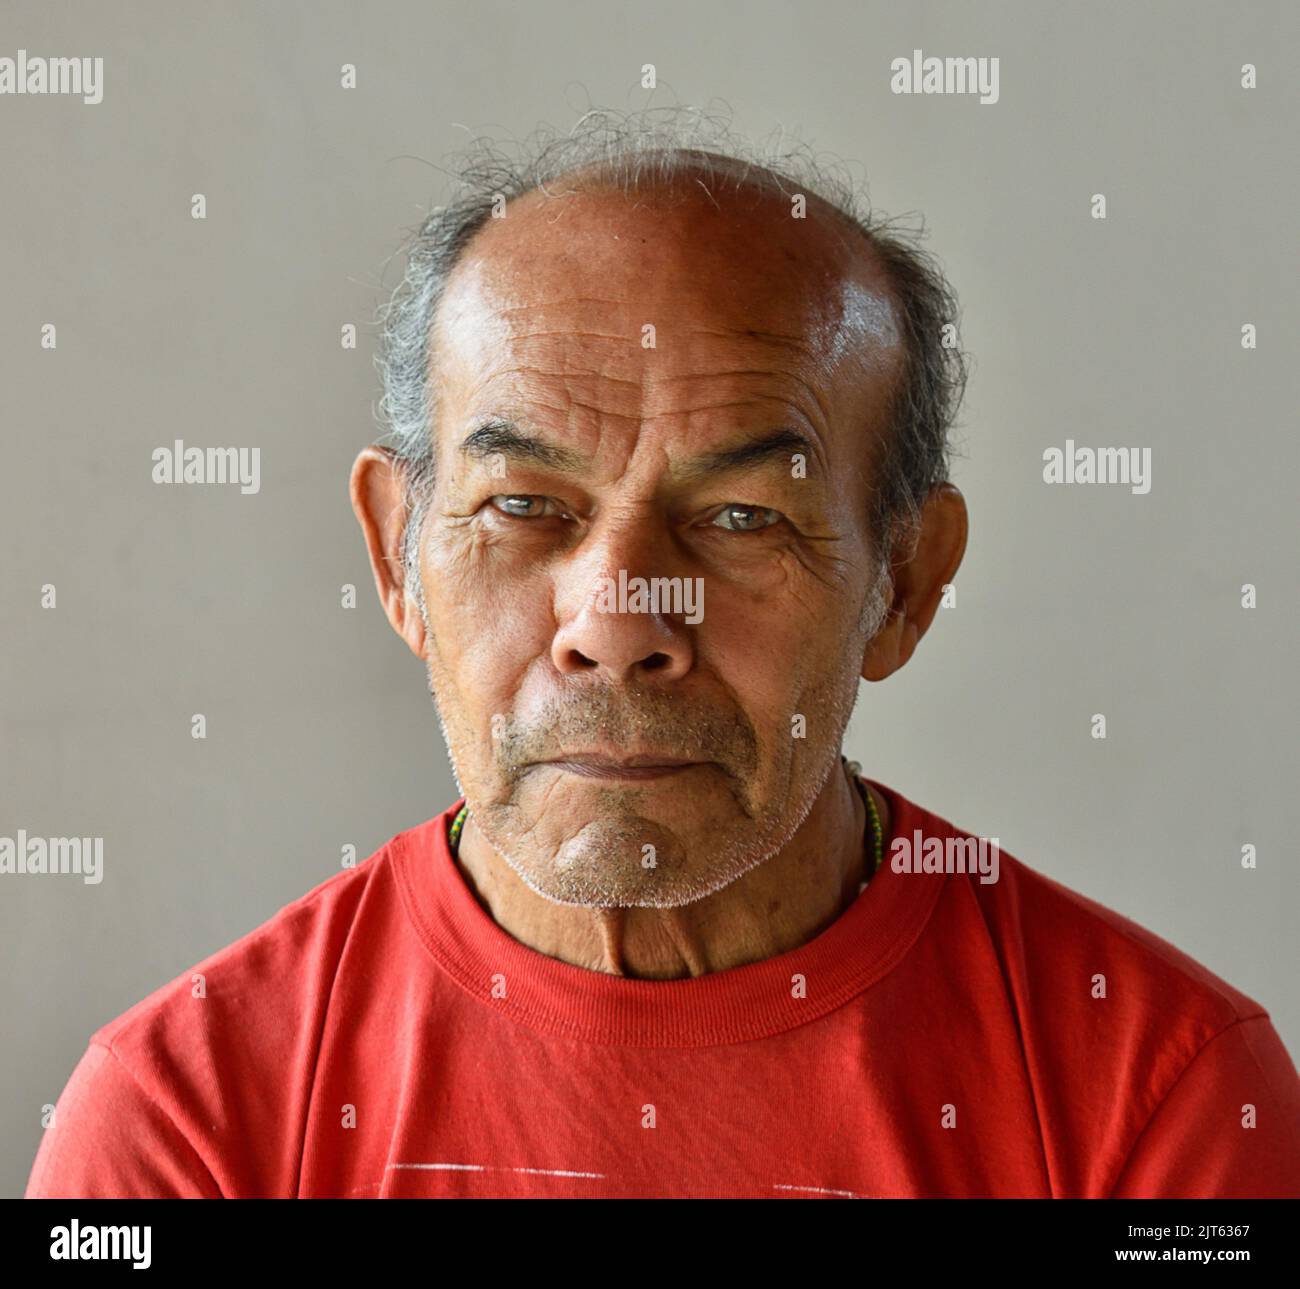 Portrait d'un homme hispanique âgé contre un mur blanc Banque D'Images